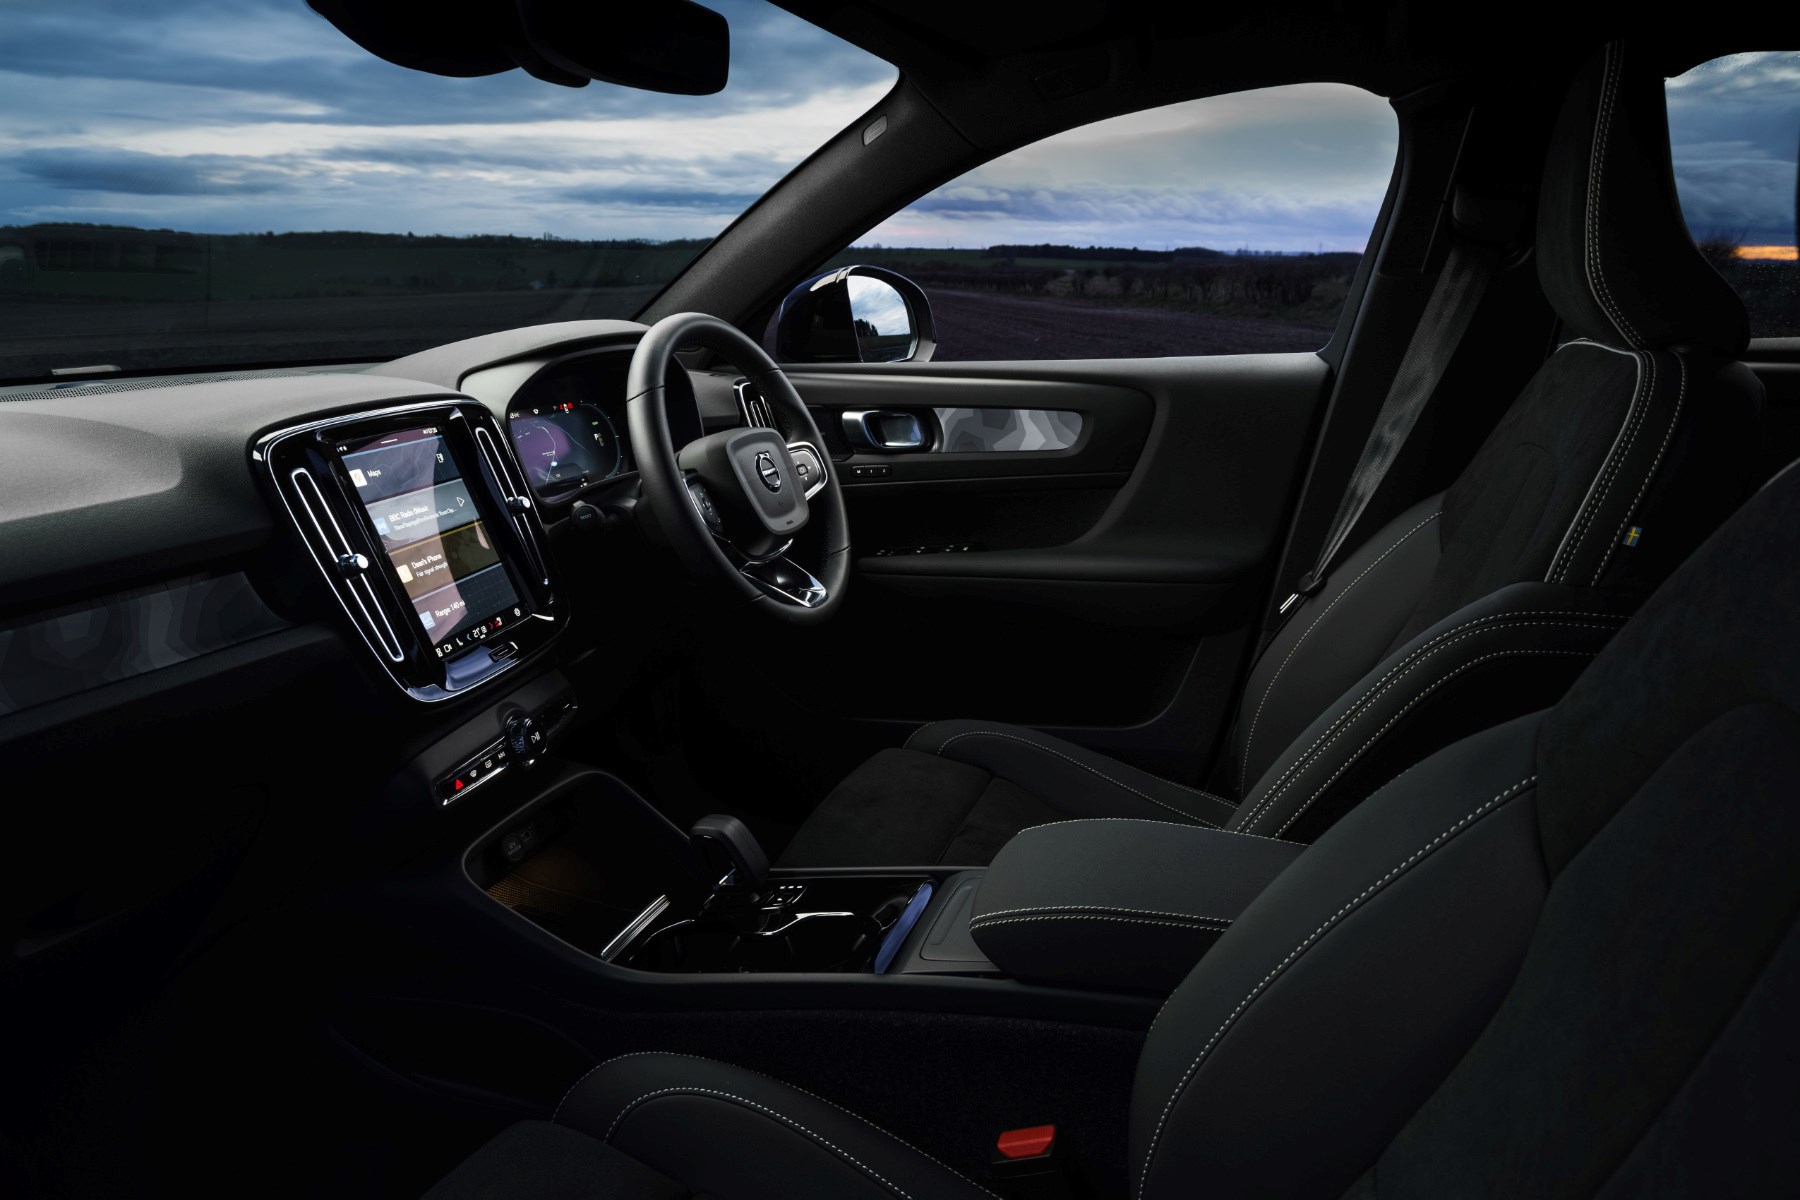 Volvo C40 interior